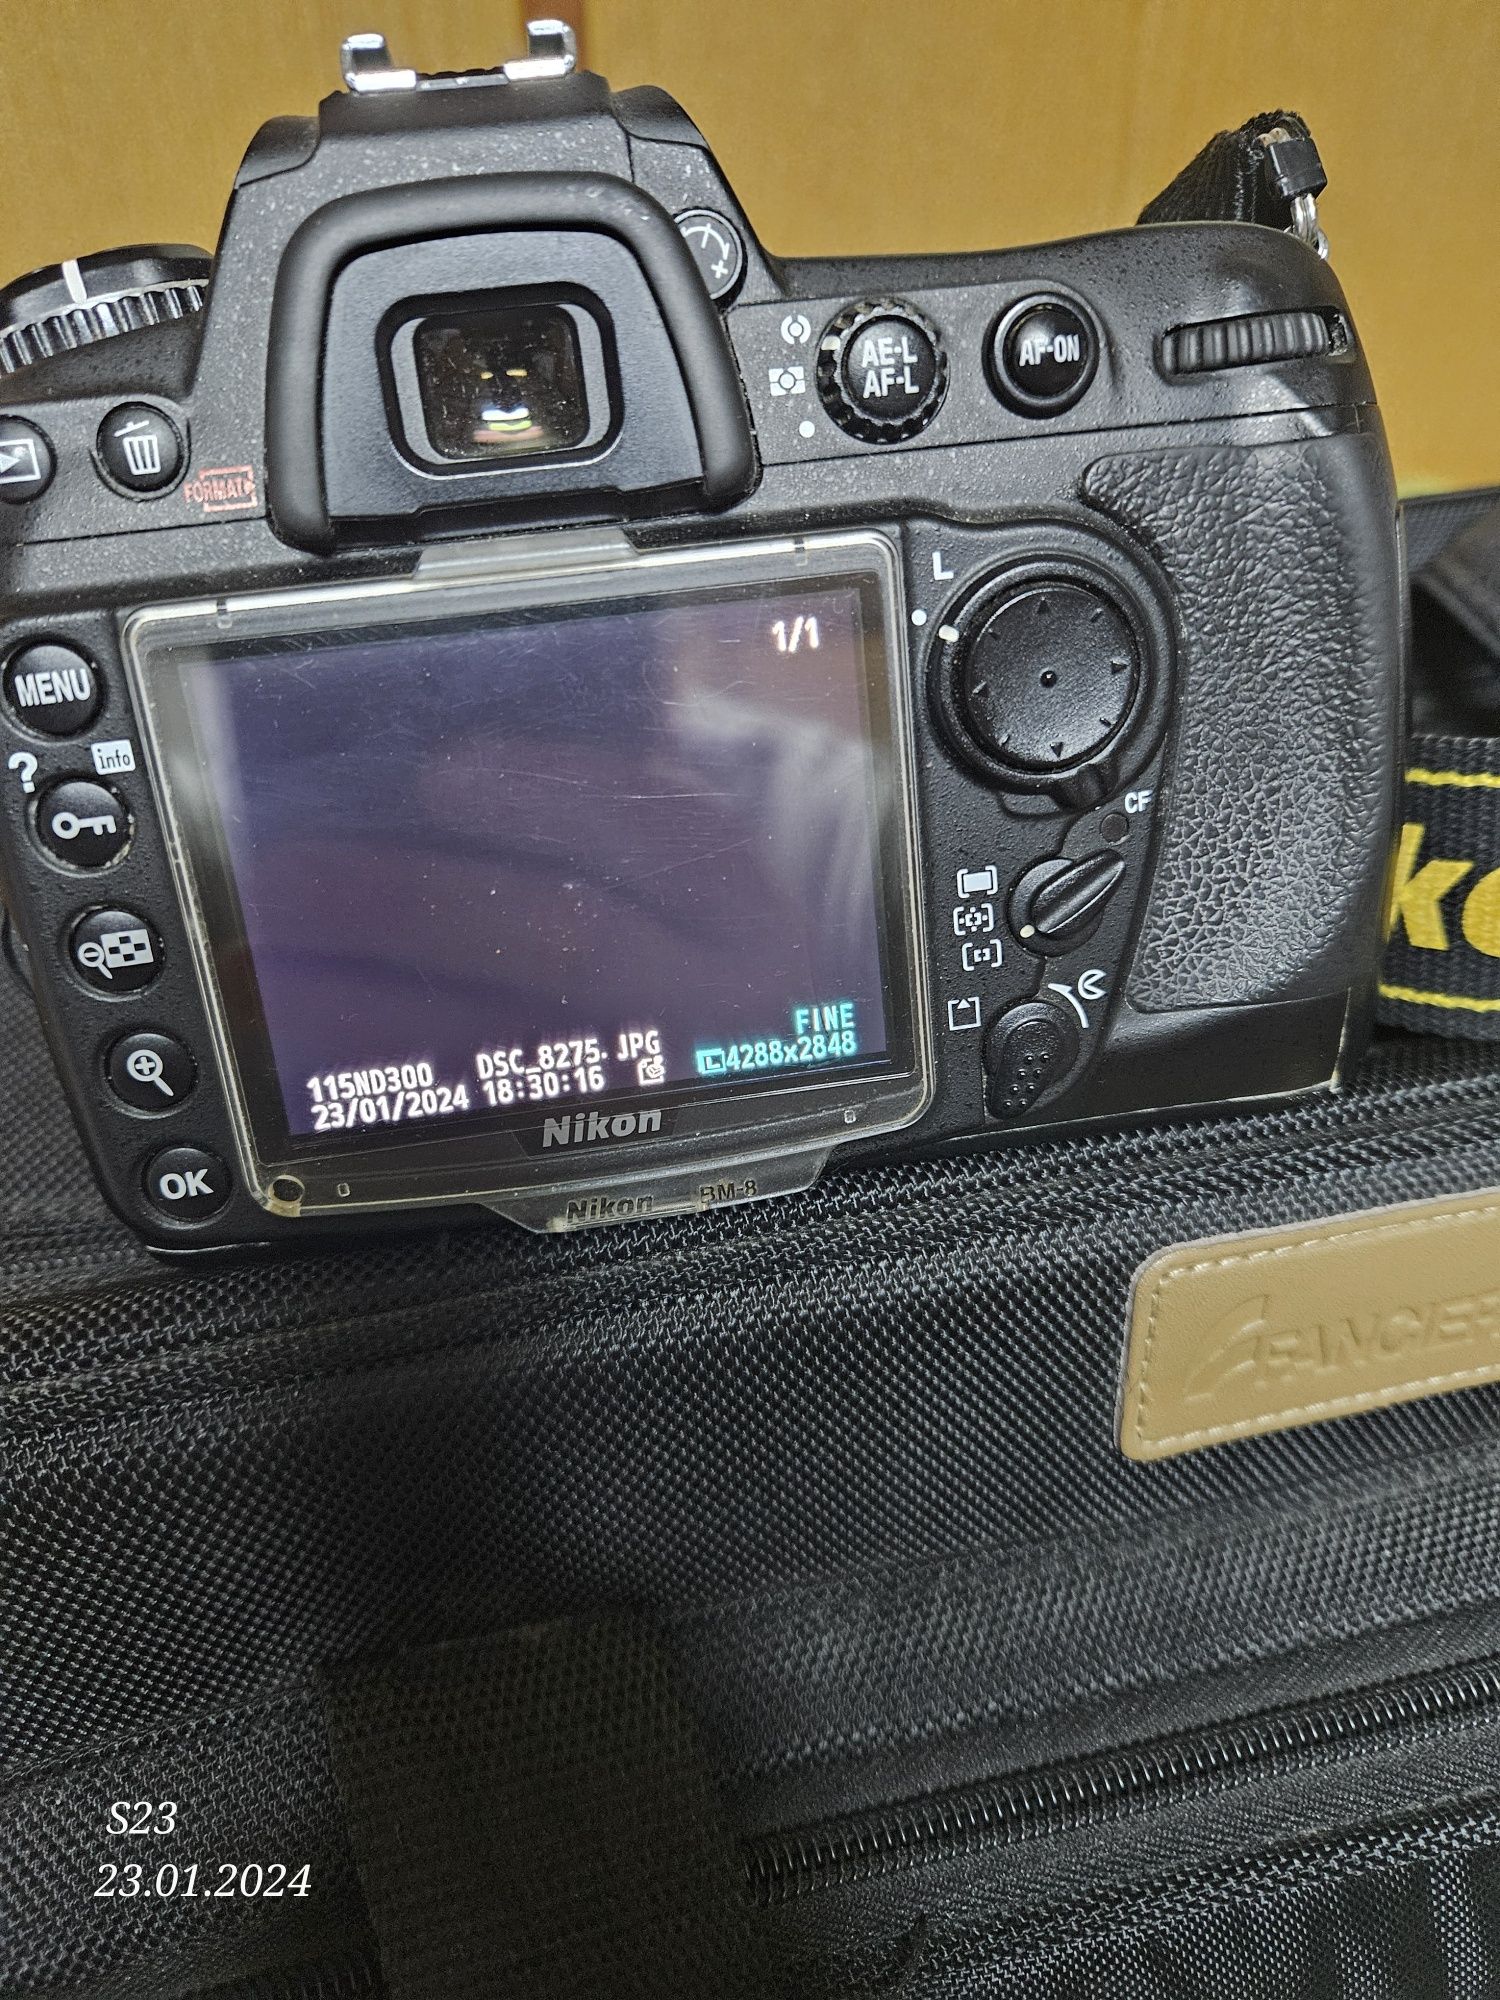 Nikon D300 ieftin, doar body, funcționează impecabil